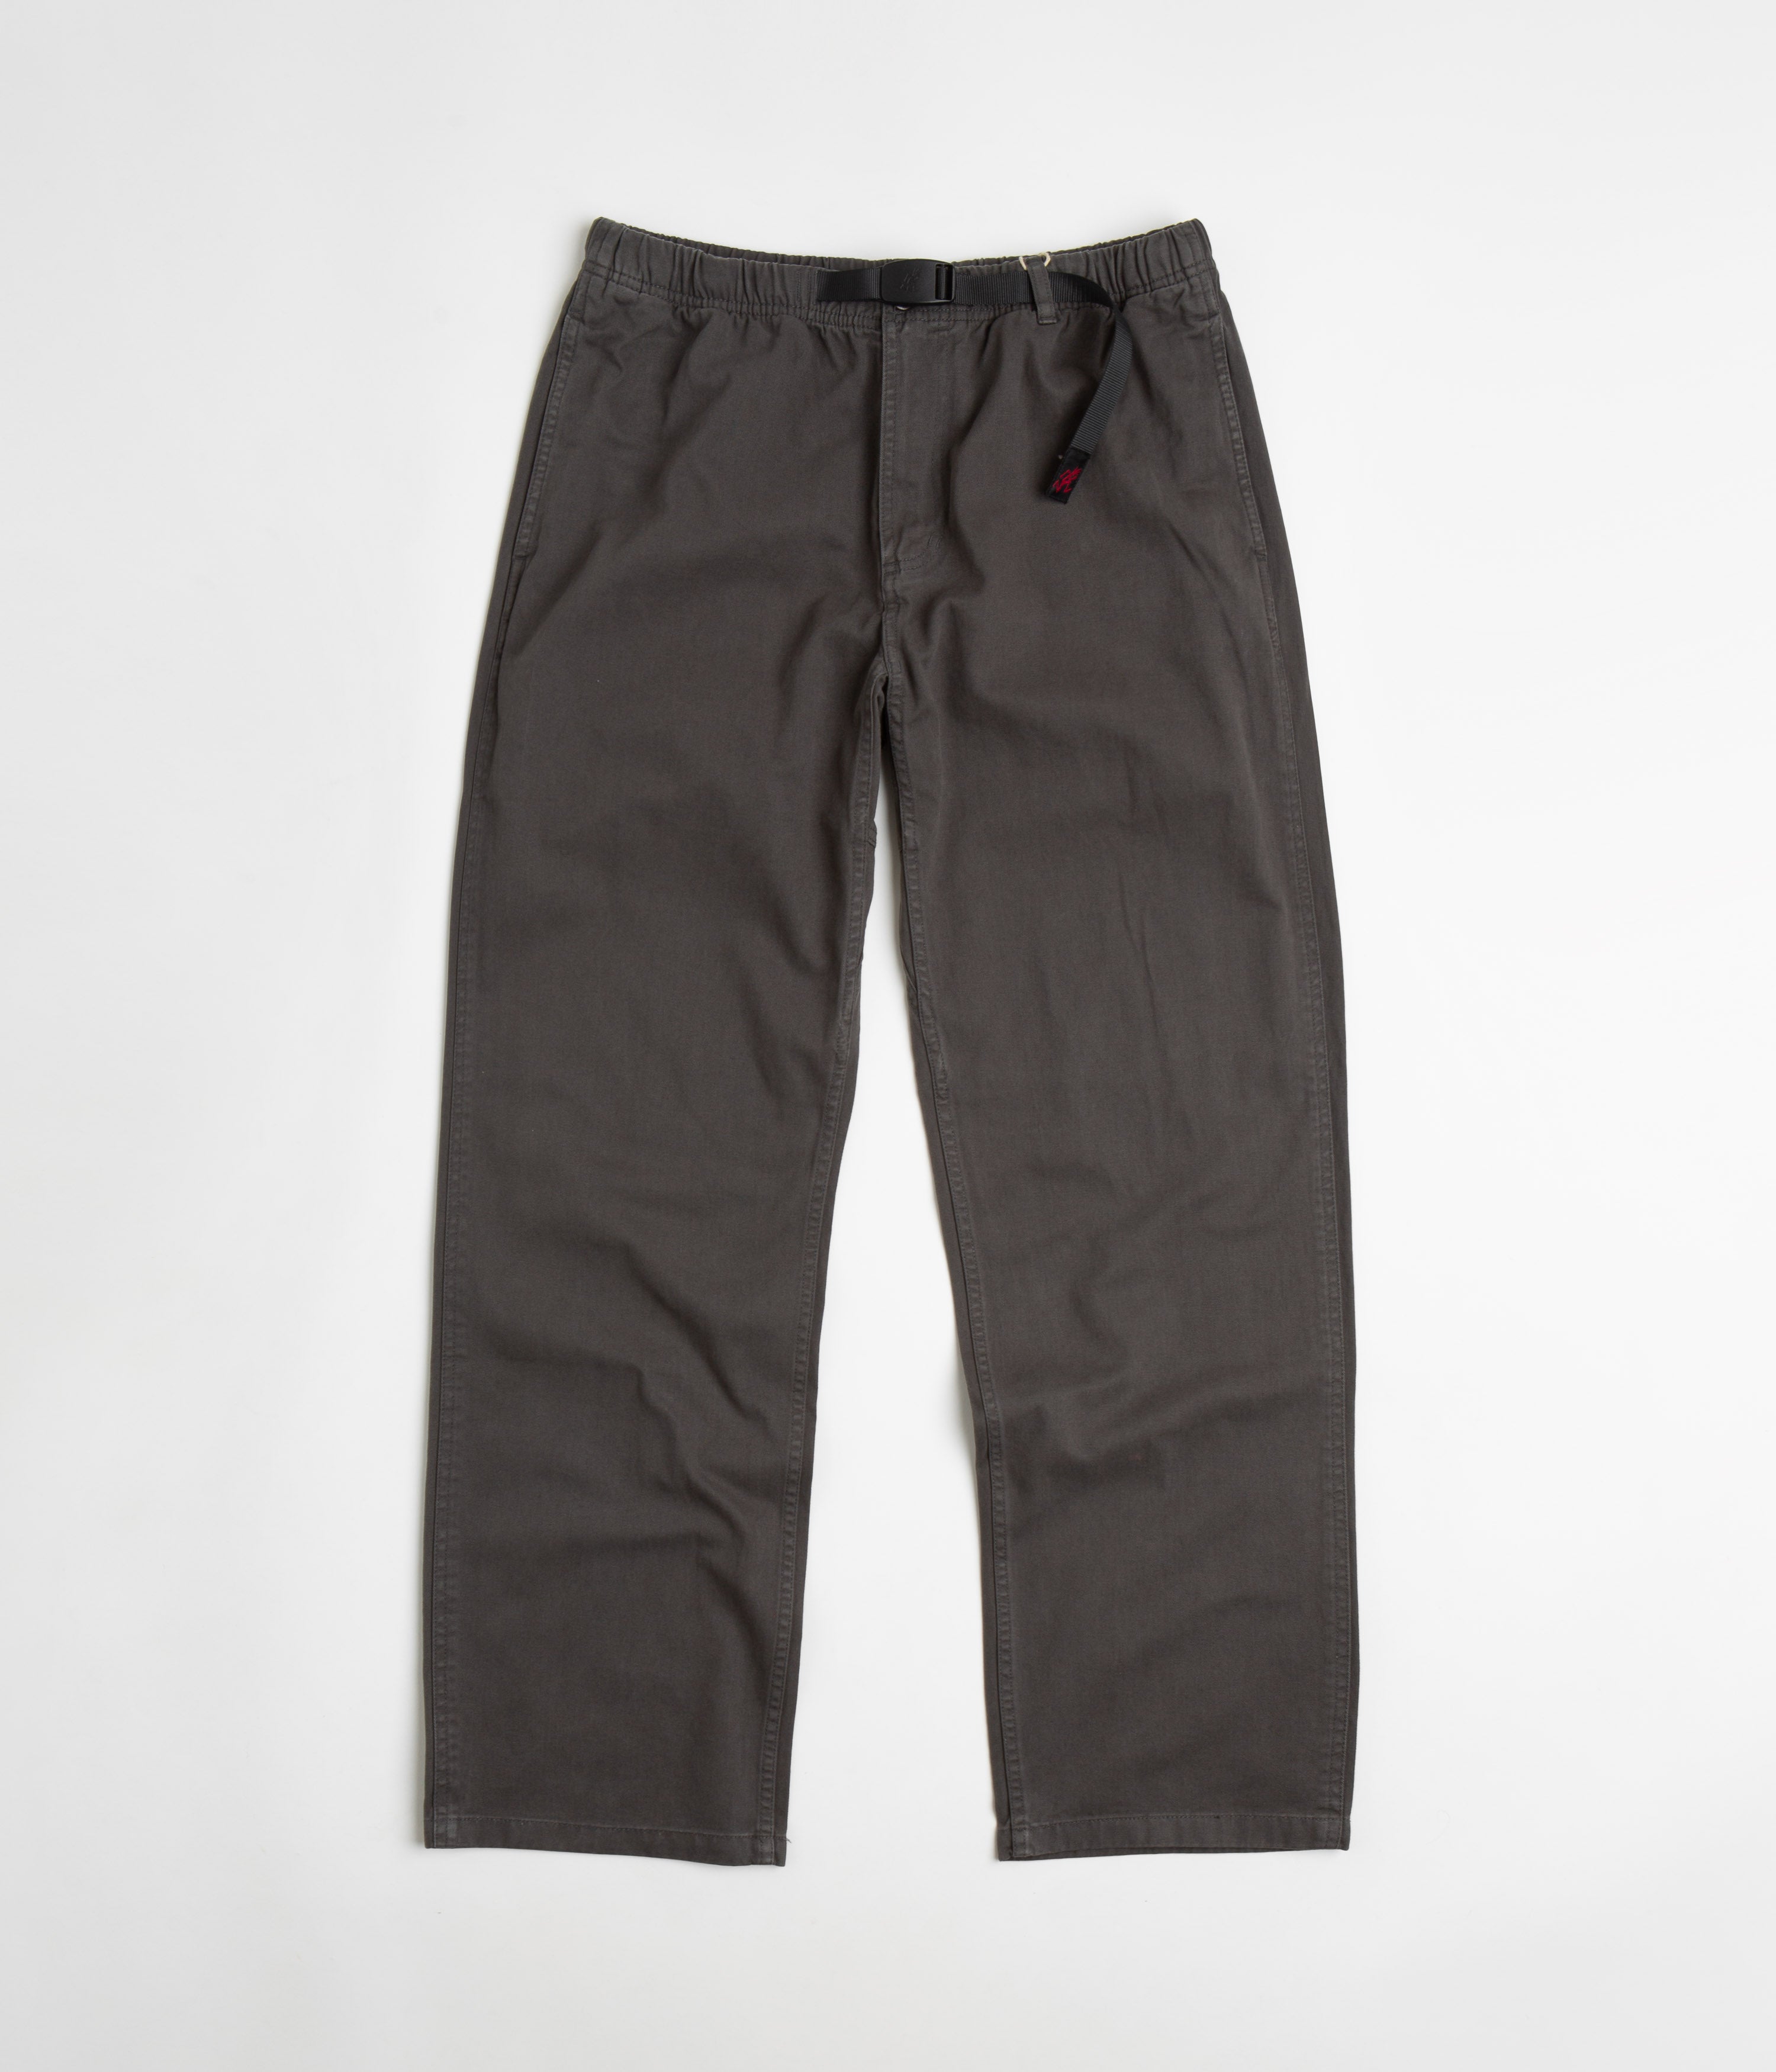 Gramicci Original G Pants - Charcoal | Flatspot